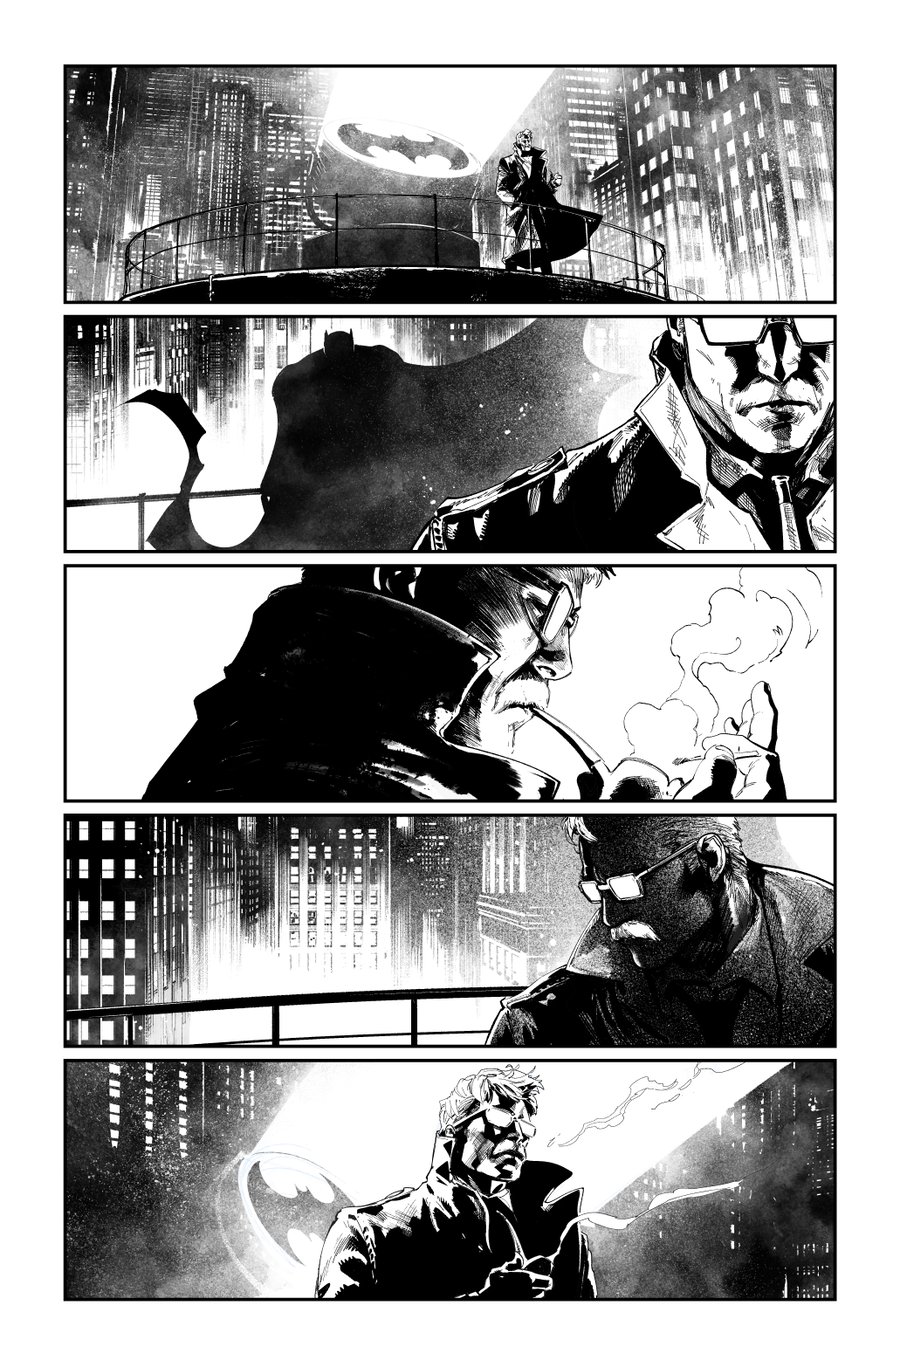 Image of BATMAN KILLING TIME #1 p.28